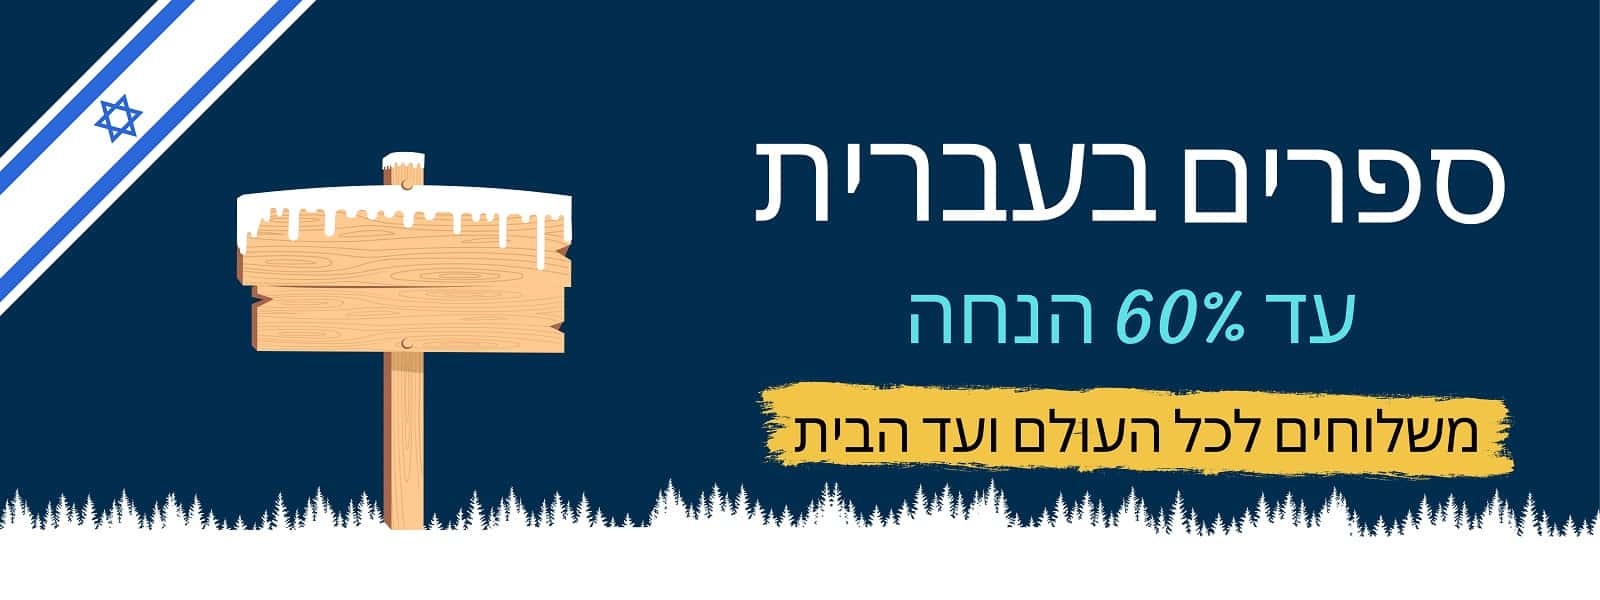 Colleen Hoover - Verity (Book in Hebrew) - Buy Online from Israel 